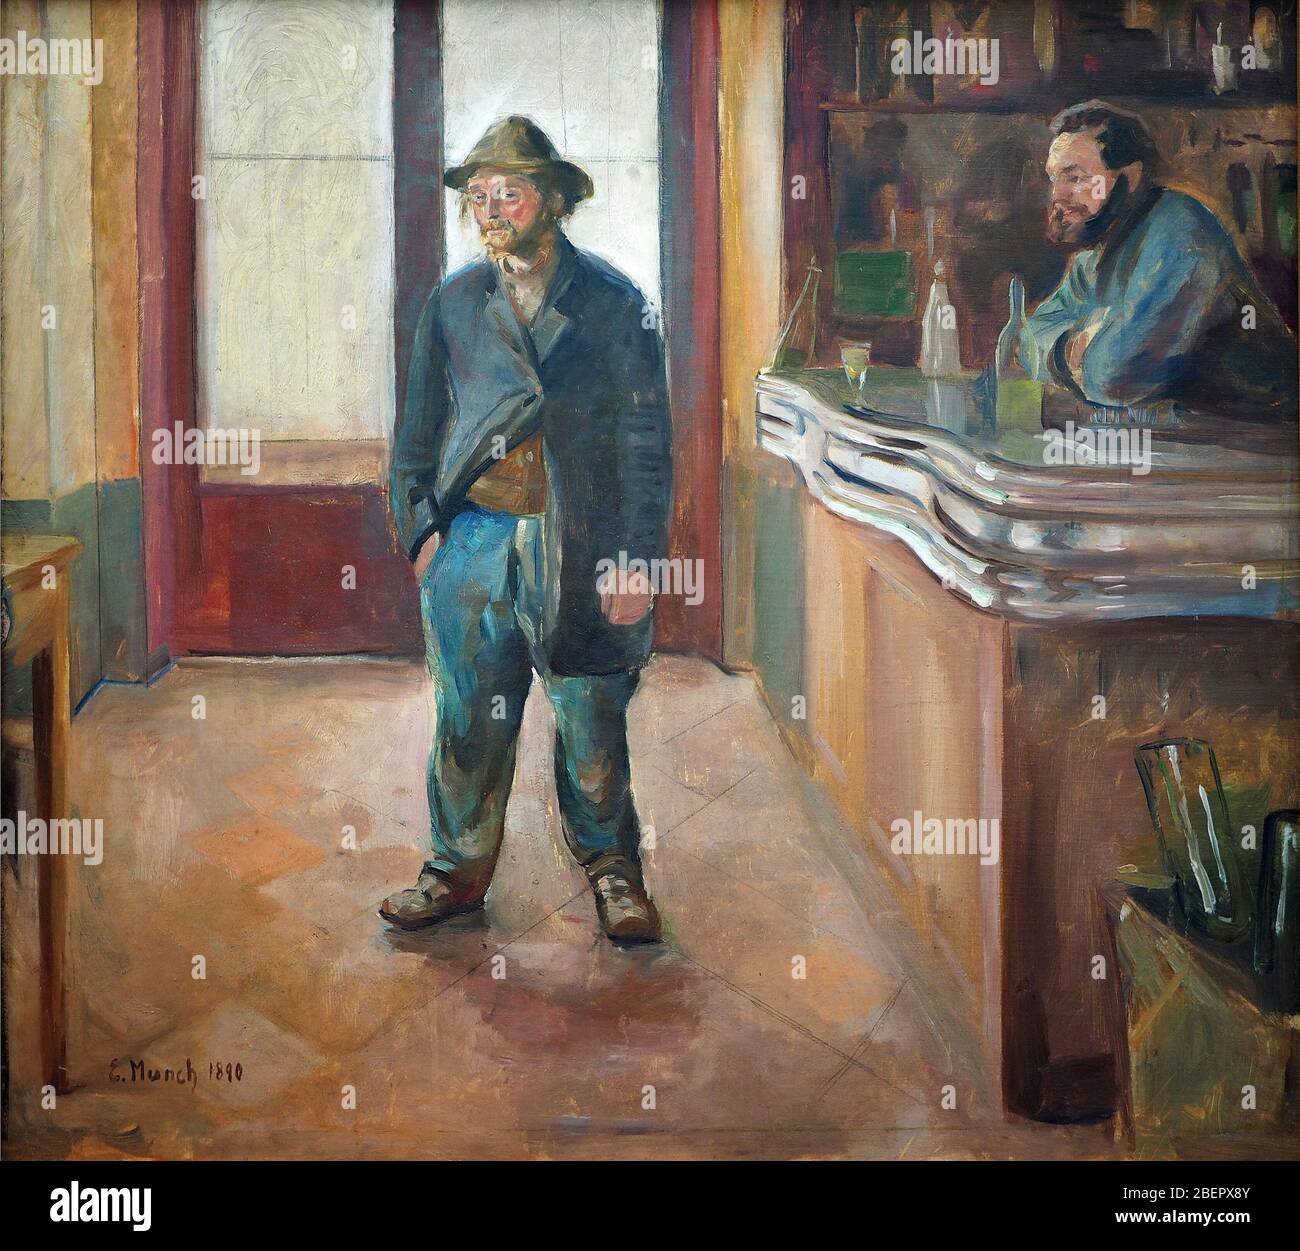 In der Bar von Edvard Munch 1890. Städtische Galerie im Städelschen Kunstinstitut, Frankfurt am Main, Deutschland Stockfoto